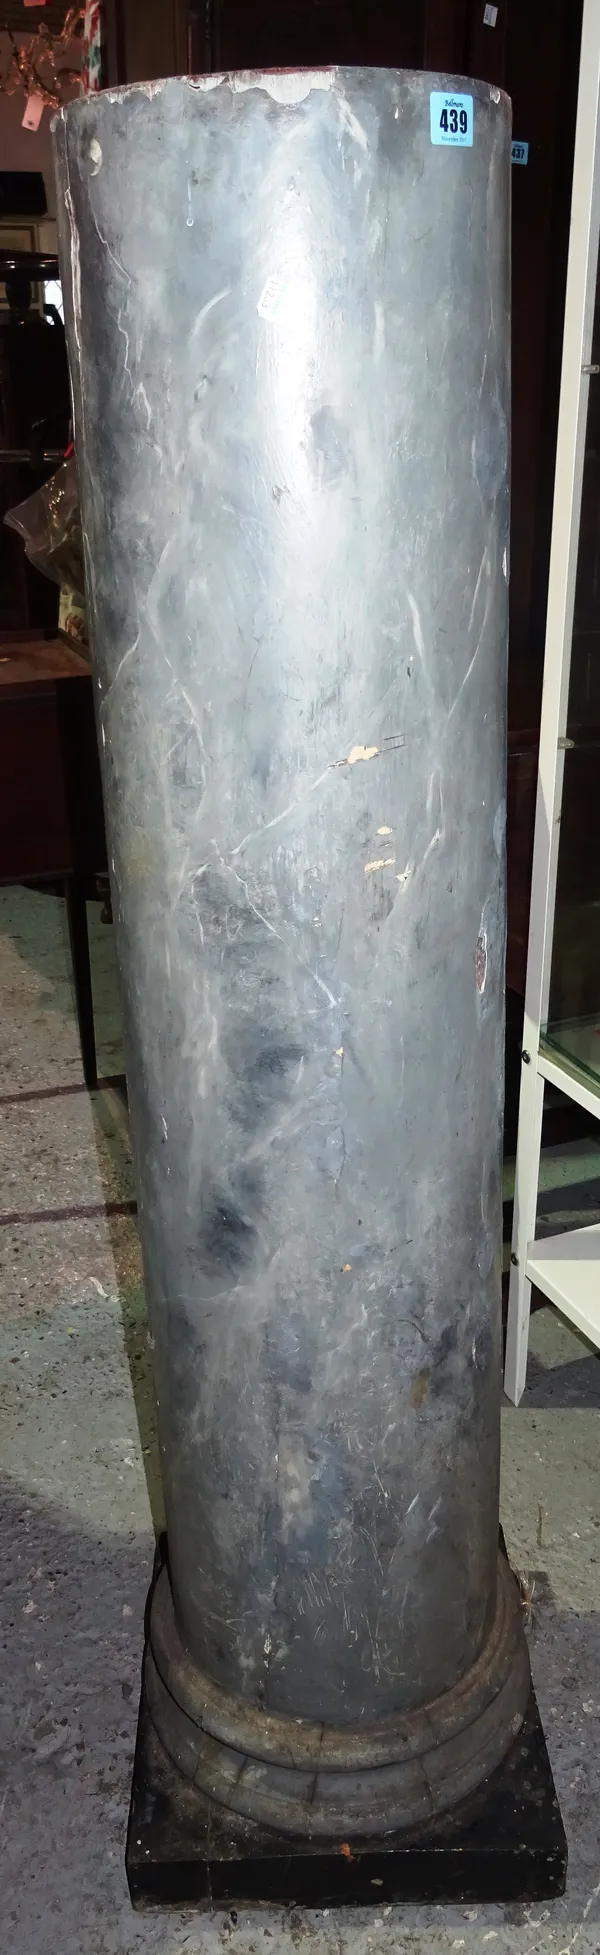 A simulated marble column, 25cm diameter x 121cm high. J4